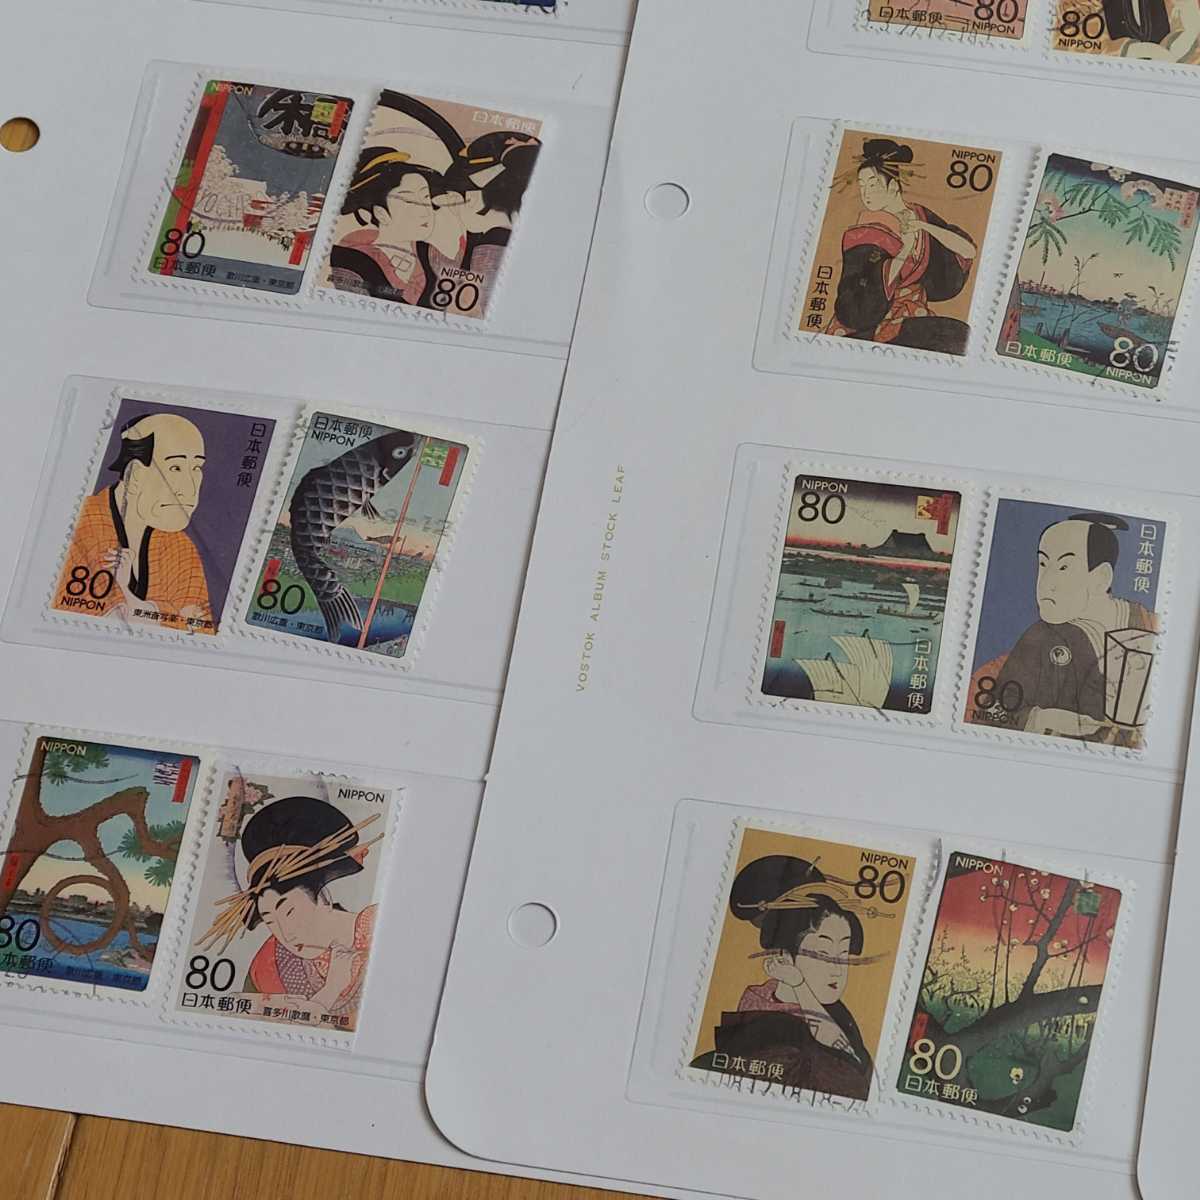 即出荷 使用済み日本切手 昔話シリーズ 19種